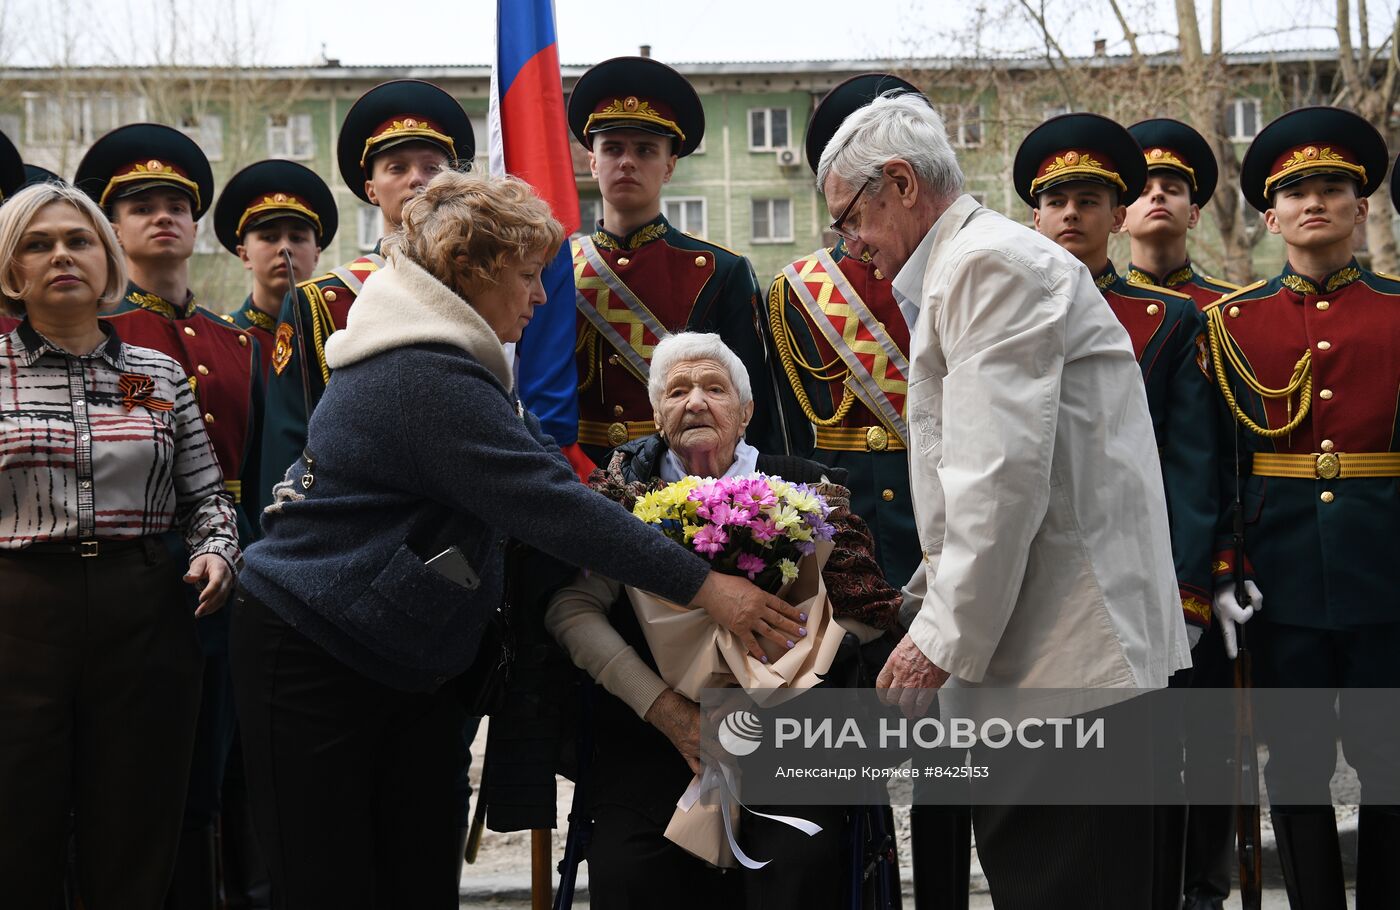 Поздравление ветерана ВОВ А. Водяниковой с наступающим Днем Победы